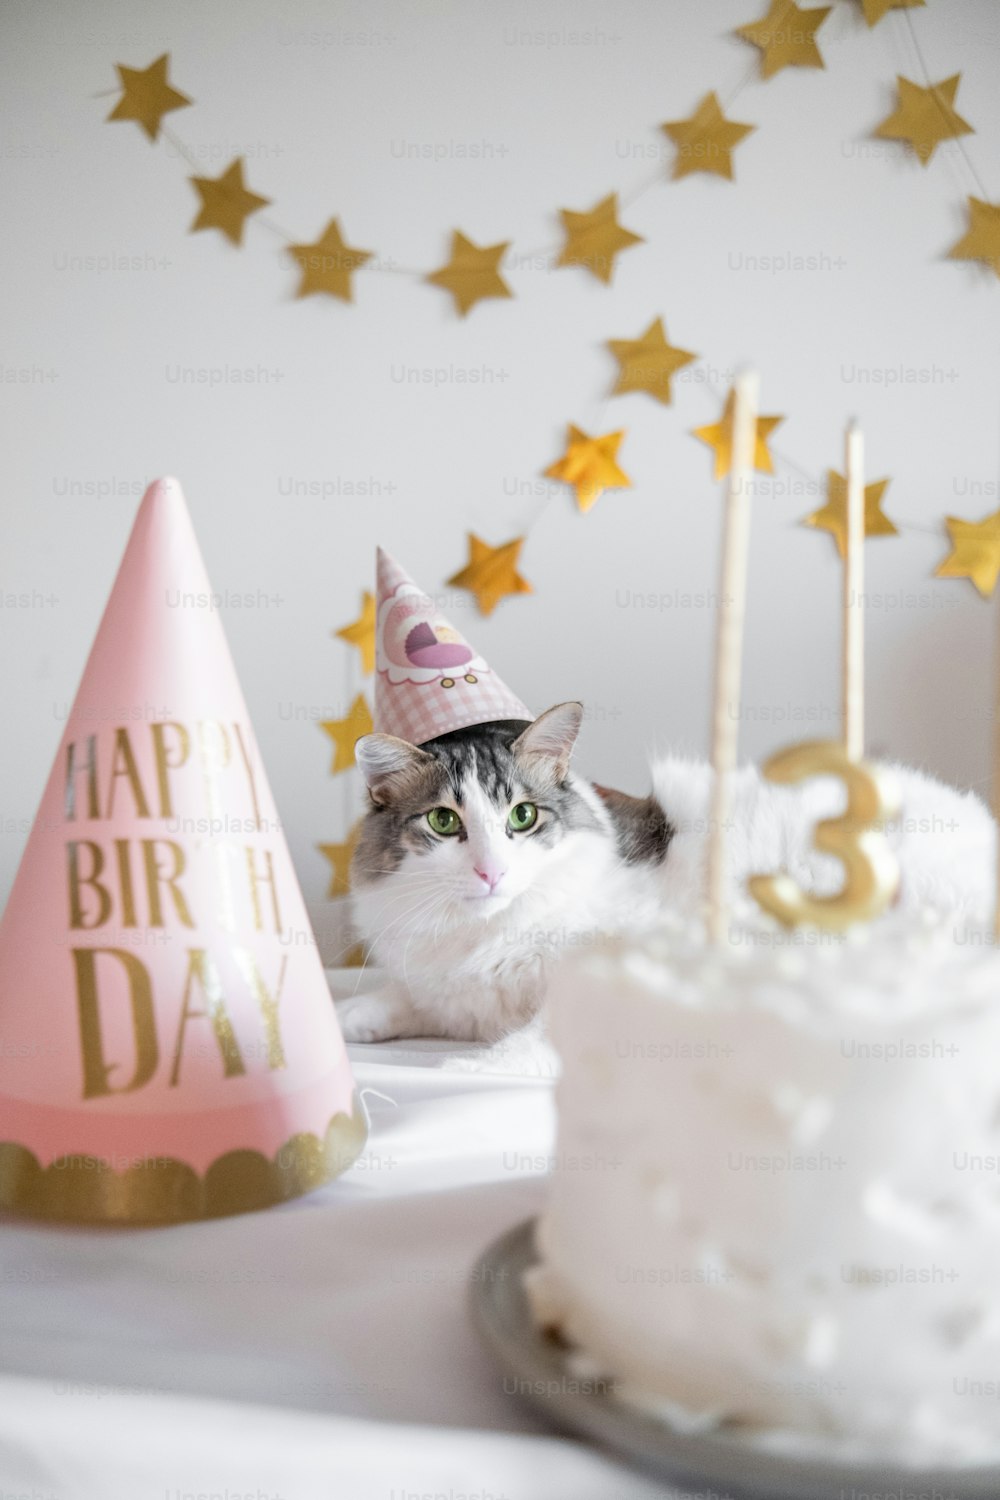 생일 케이크 앞에 앉아 있는 고양이